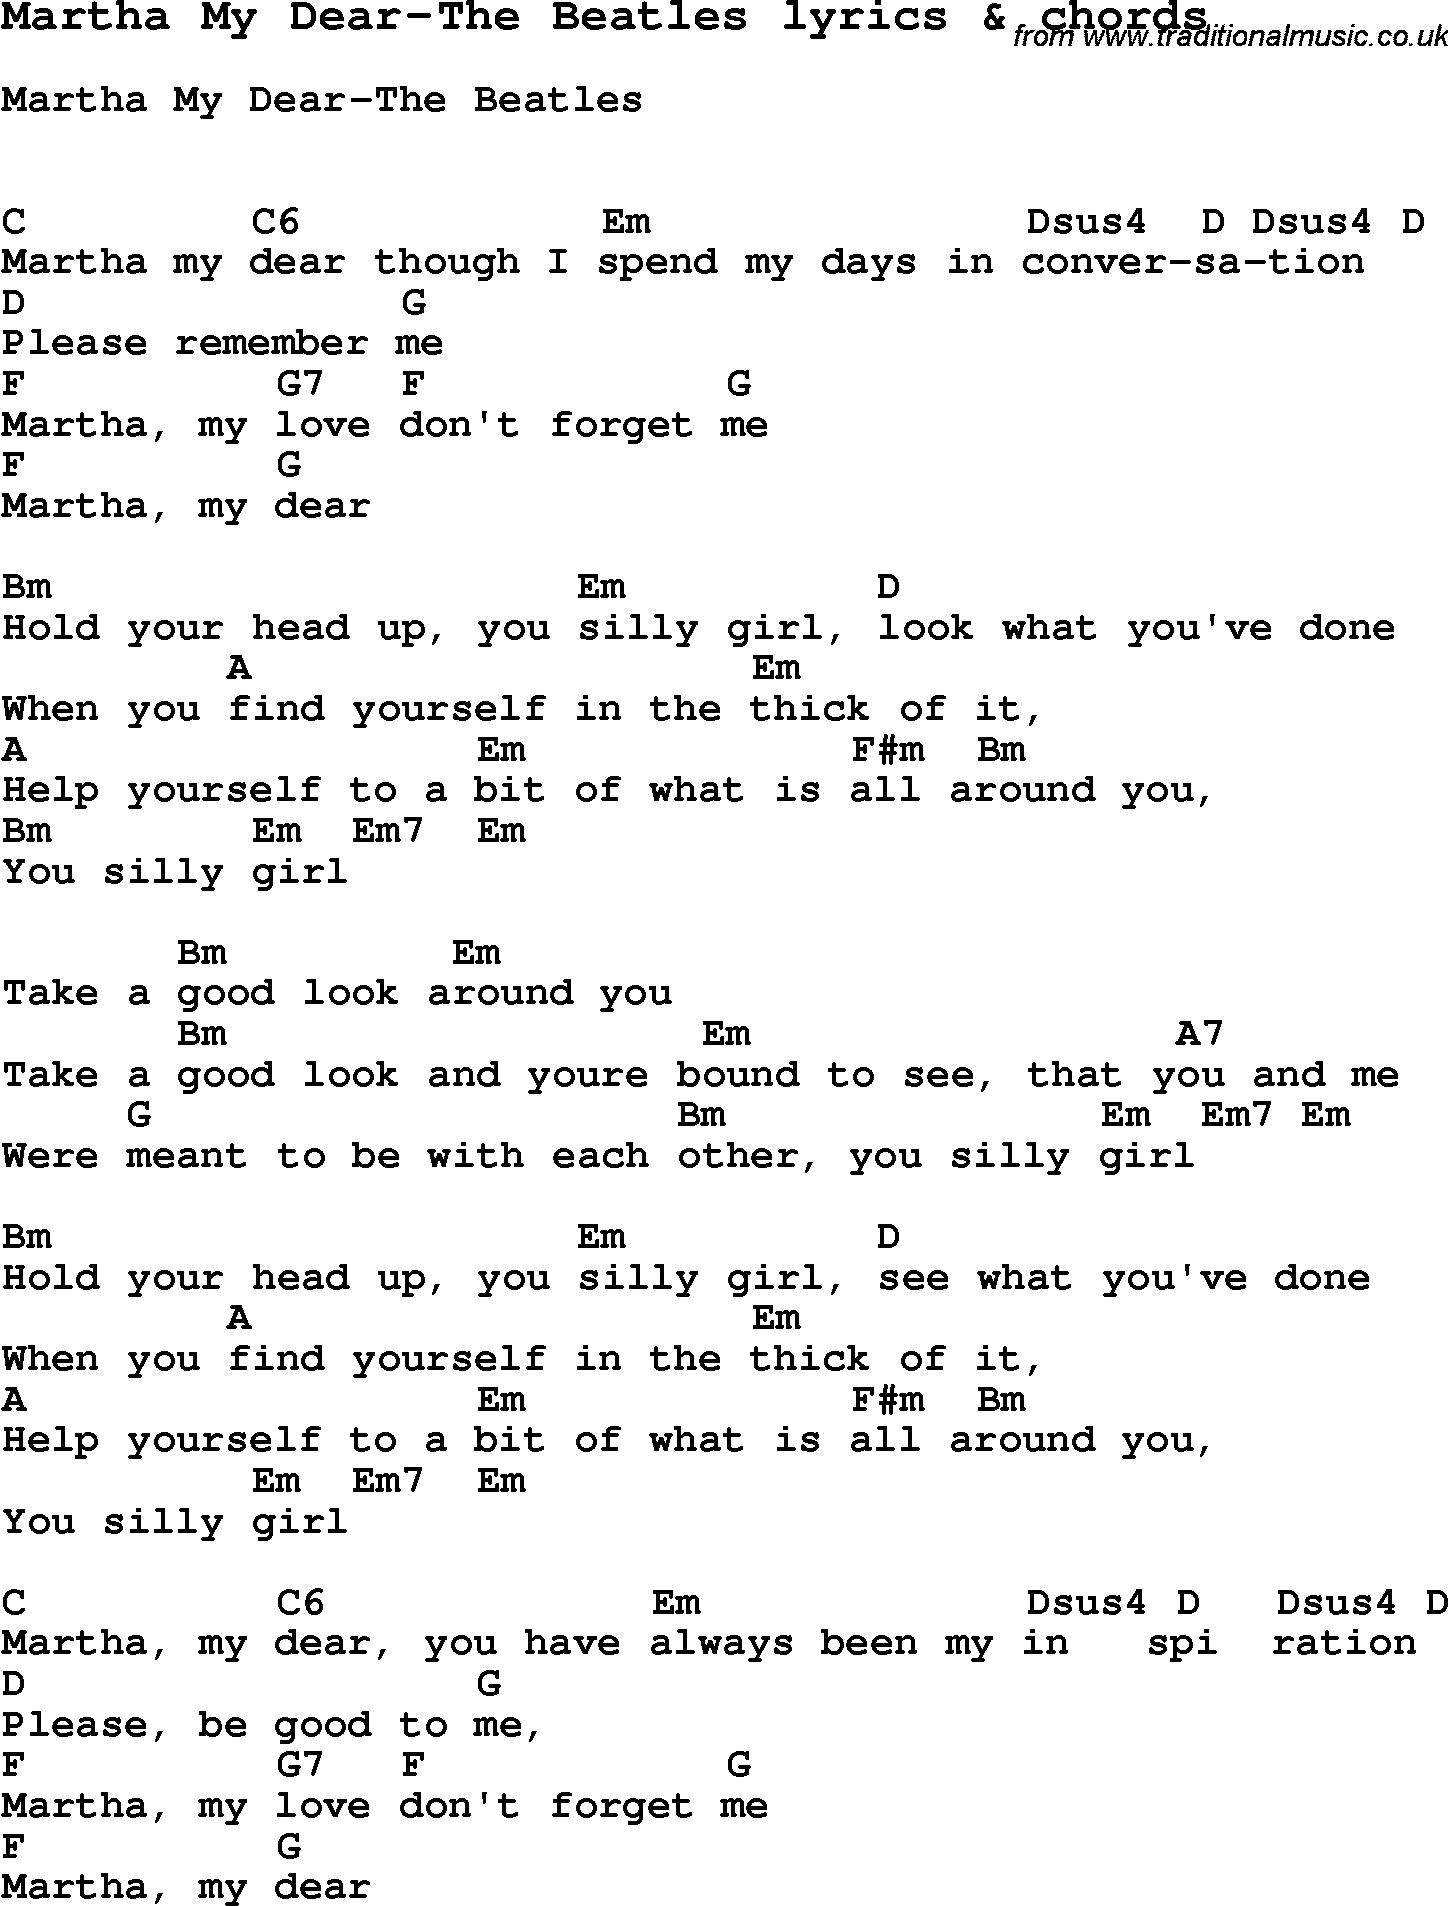 Love Song Lyrics For Martha My Dear The Beatles With Chords